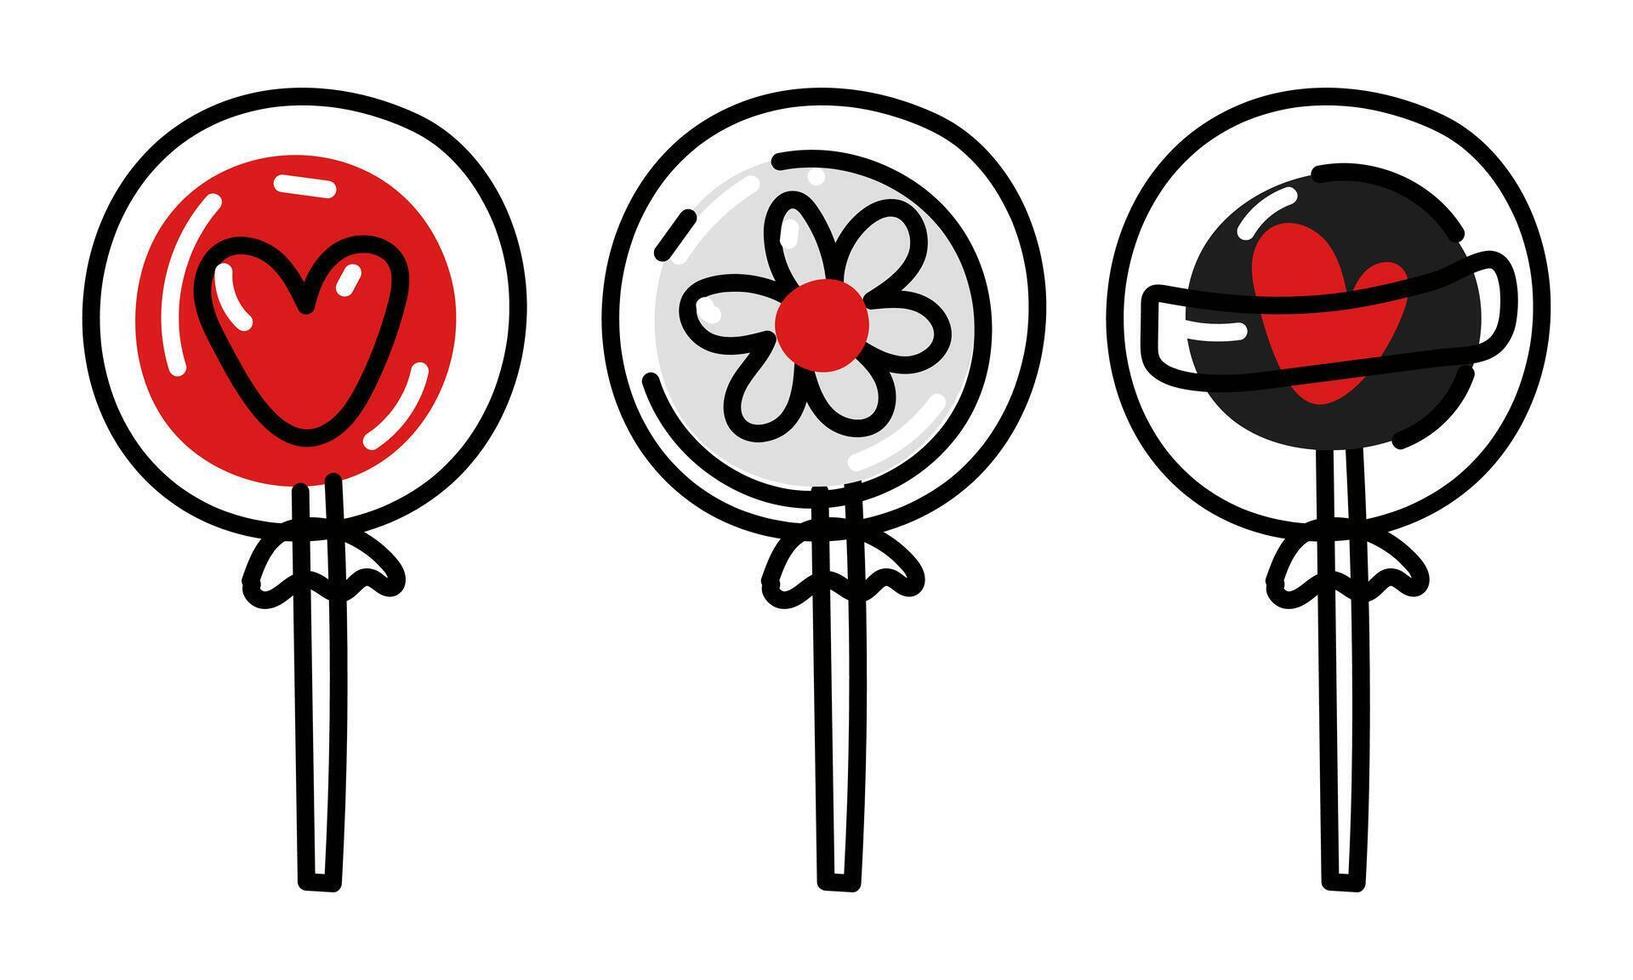 en uppsättning av klubbor med röd platt klottrar. klubbor hjärta, blomma i en paket. vektor tecknad serie platt illustration. ikoner av ljuv godis. isolerat samling i röd, svart, vit färger